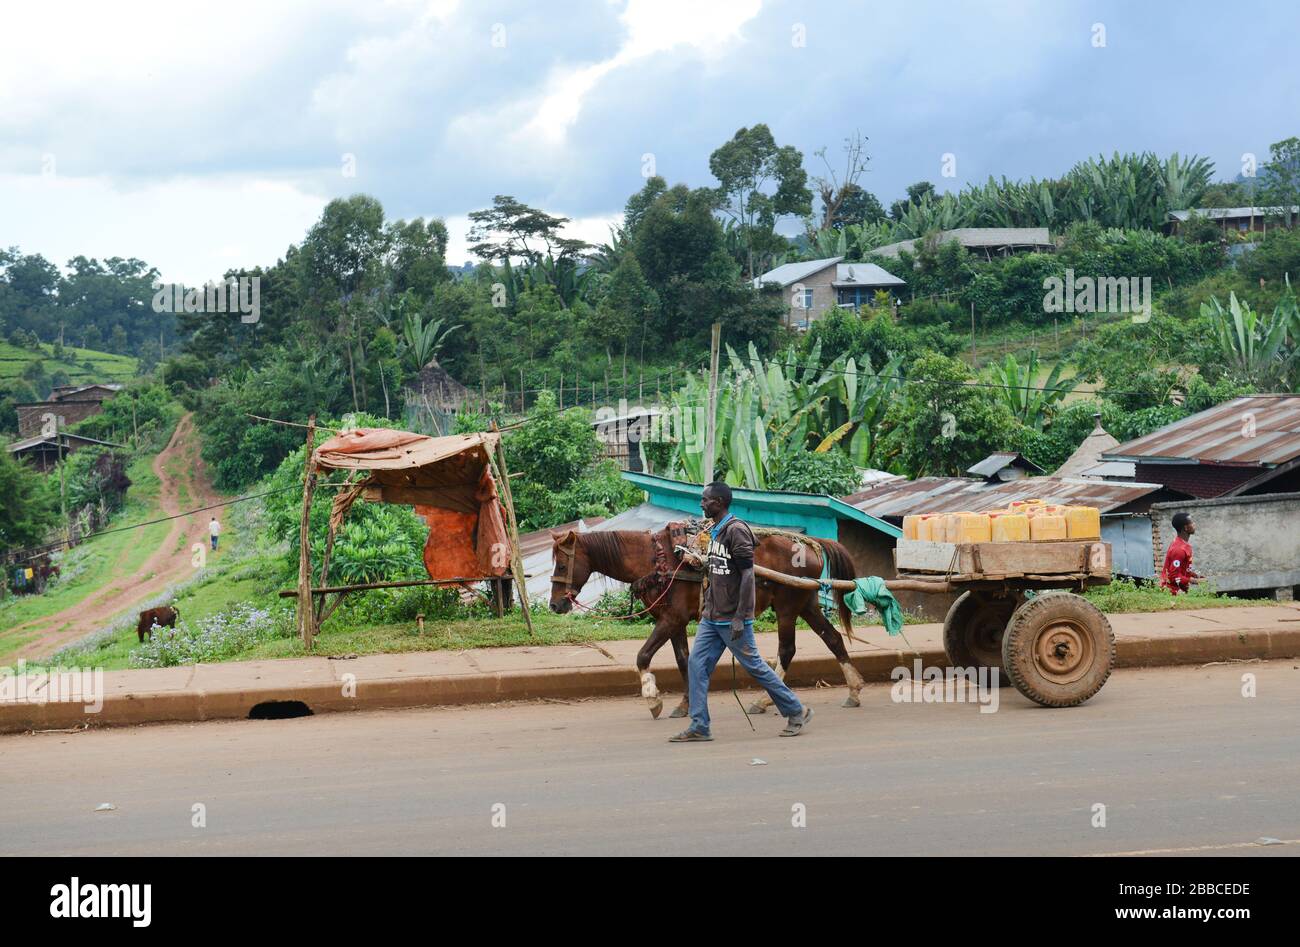 Eine Pferdekarre, die in Wusch-Wush, Äthiopien, Wasserbehälter transportiert. Stockfoto